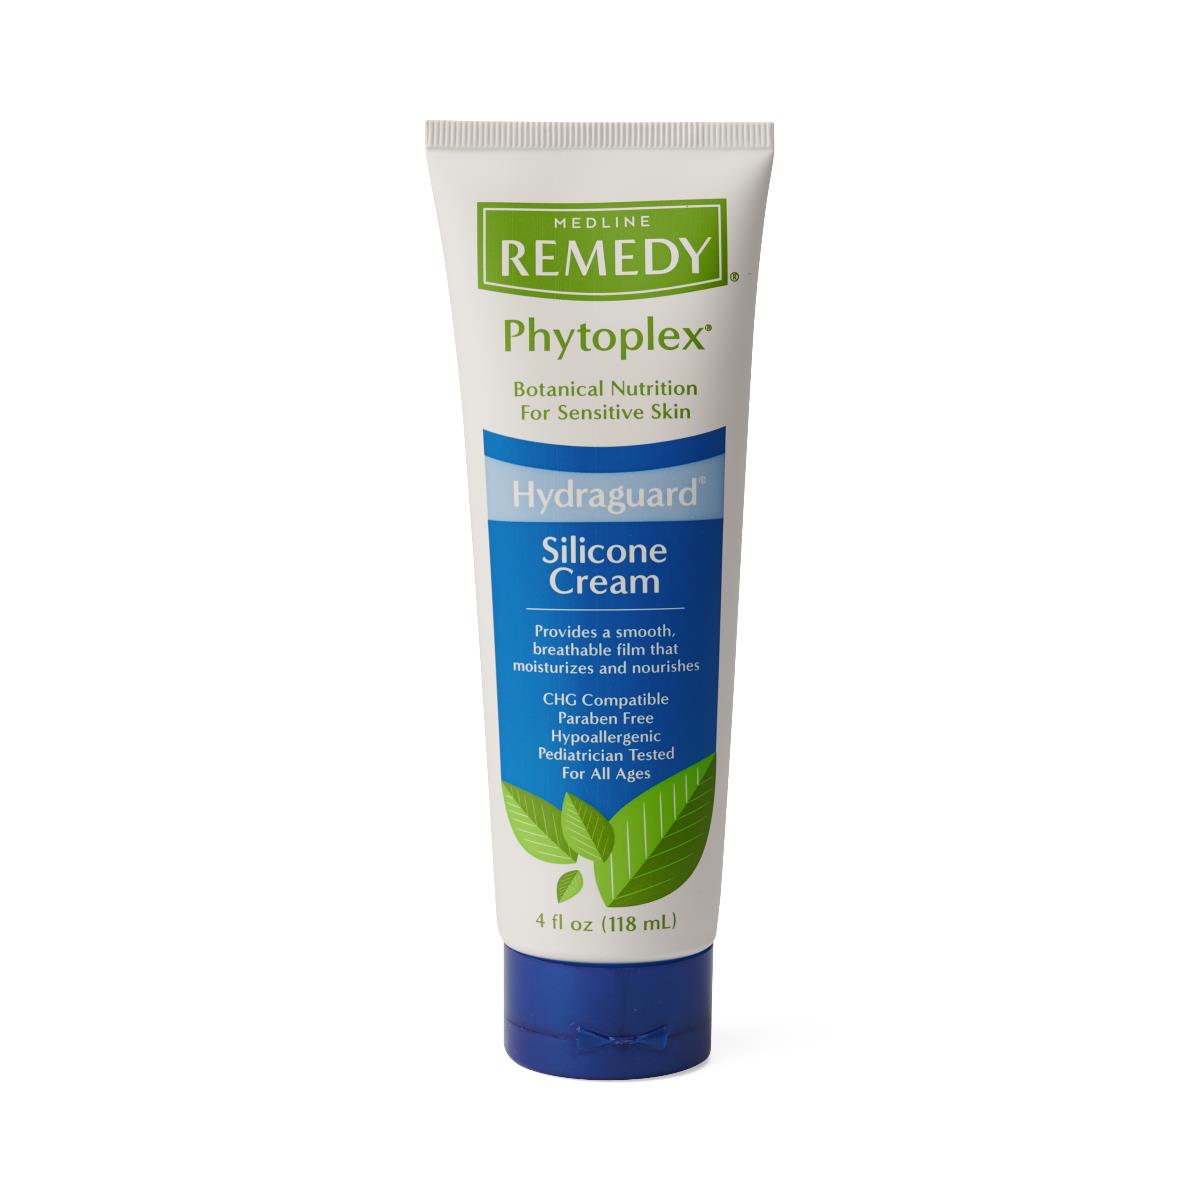 Remedy Phytoplex Hydraguard Silicone Cream, 4 oz